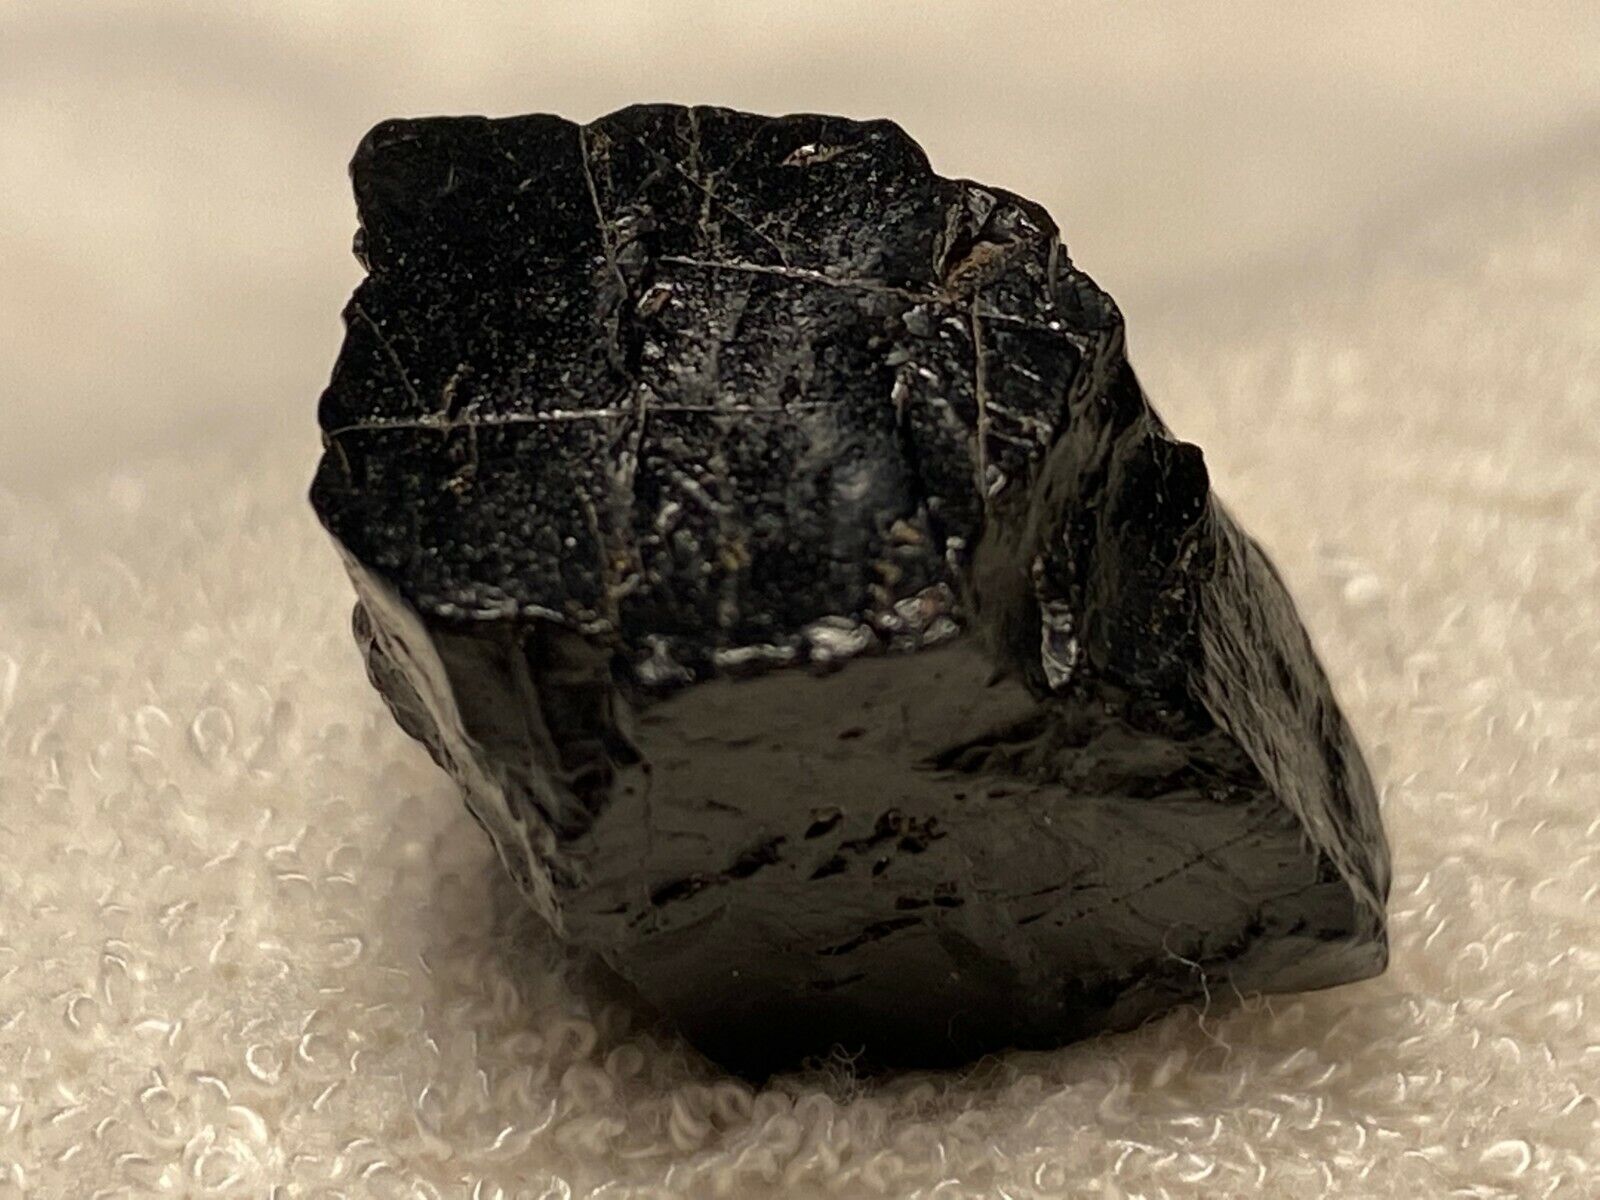 32.60 ct. Black hexagonal graphite-C meteorite impact diamond